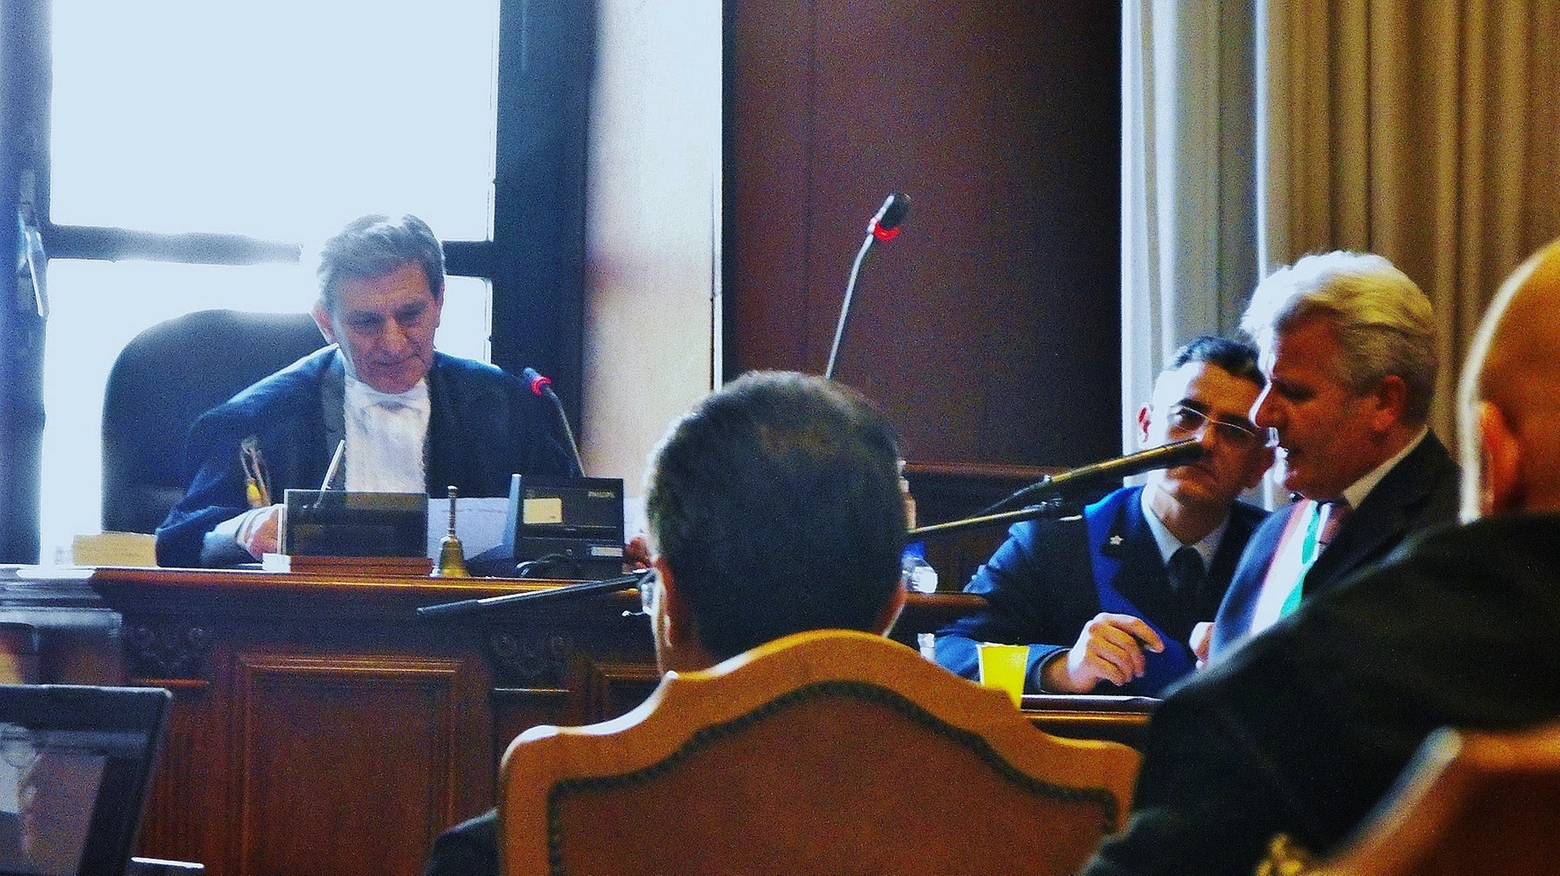 Eccidio del Padule: testimoni a deporre sulla strage del '44 al Tribunale militare di Roma